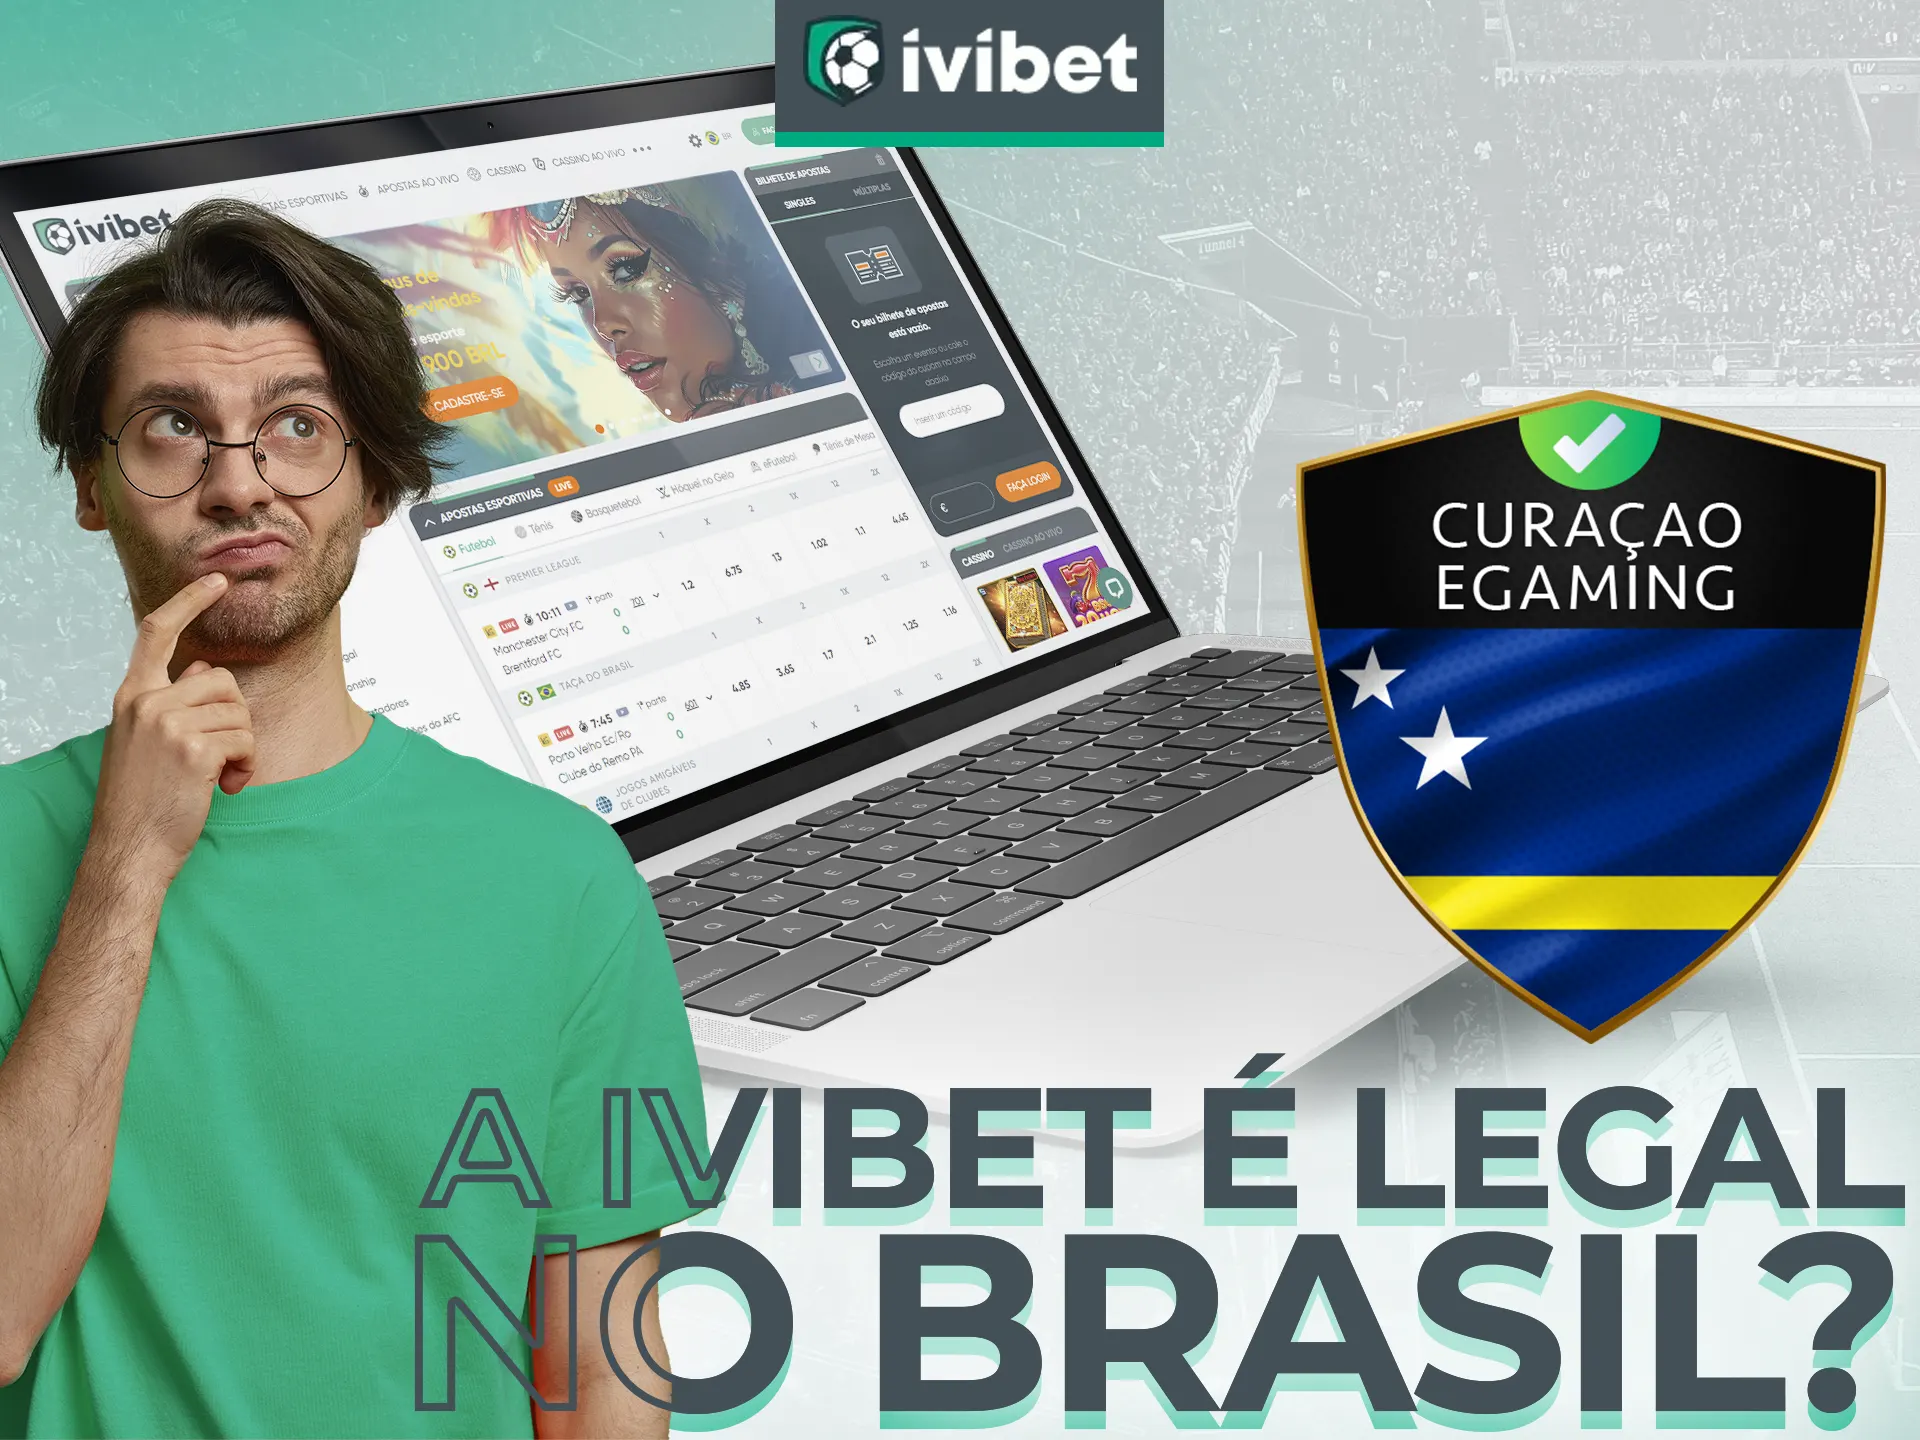 Sim, a Ivibet é legal no Brasil.